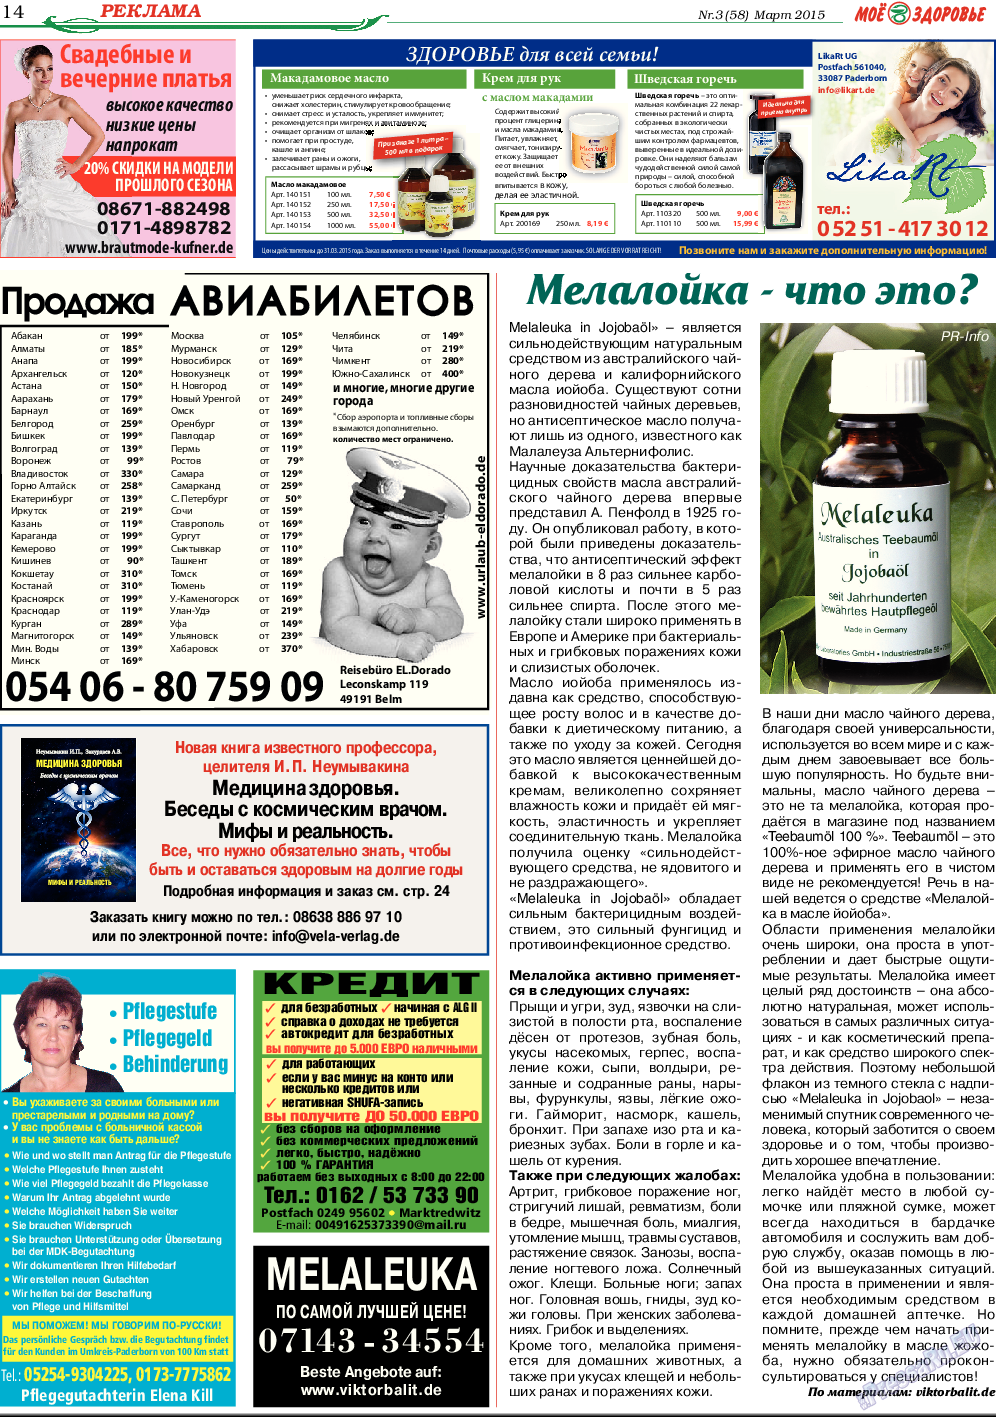 Кругозор (газета). 2015 год, номер 3, стр. 14